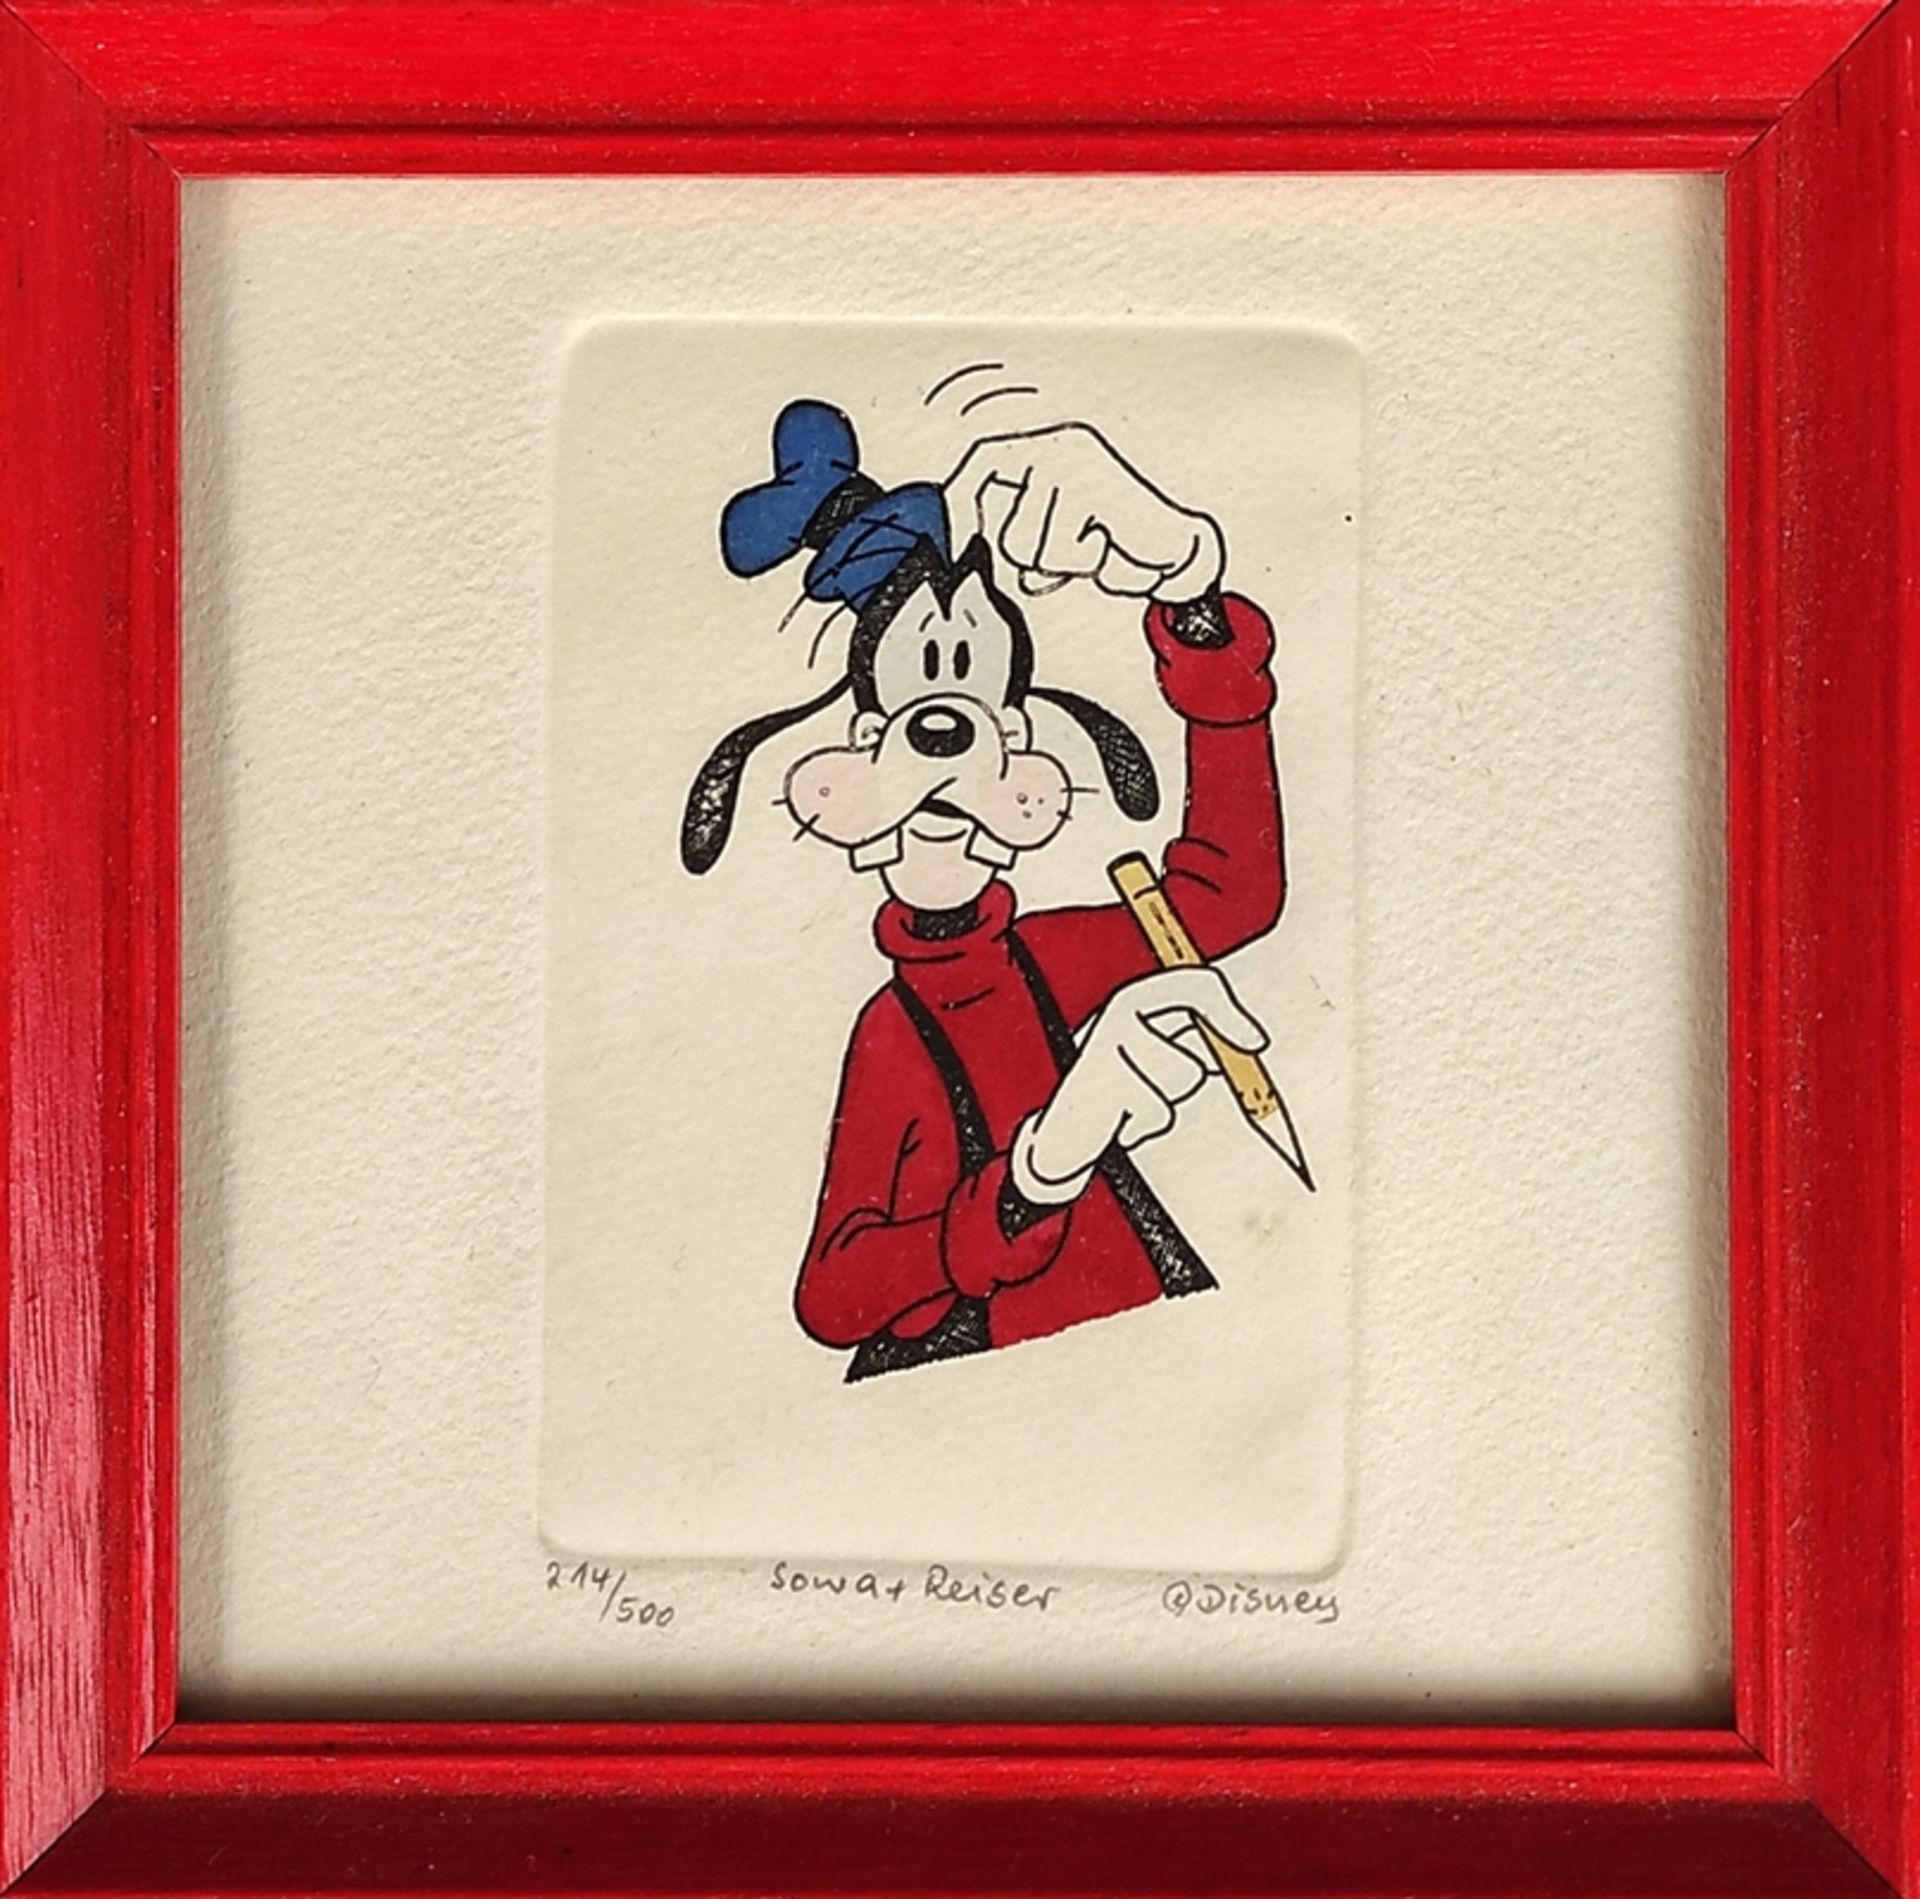 Walt Disney, "Goofy", signiert Sowa + Reiser, Ex. 214/500, Farbradierung, 8,8x6cm (Abbildung), 14x1 - Bild 2 aus 4